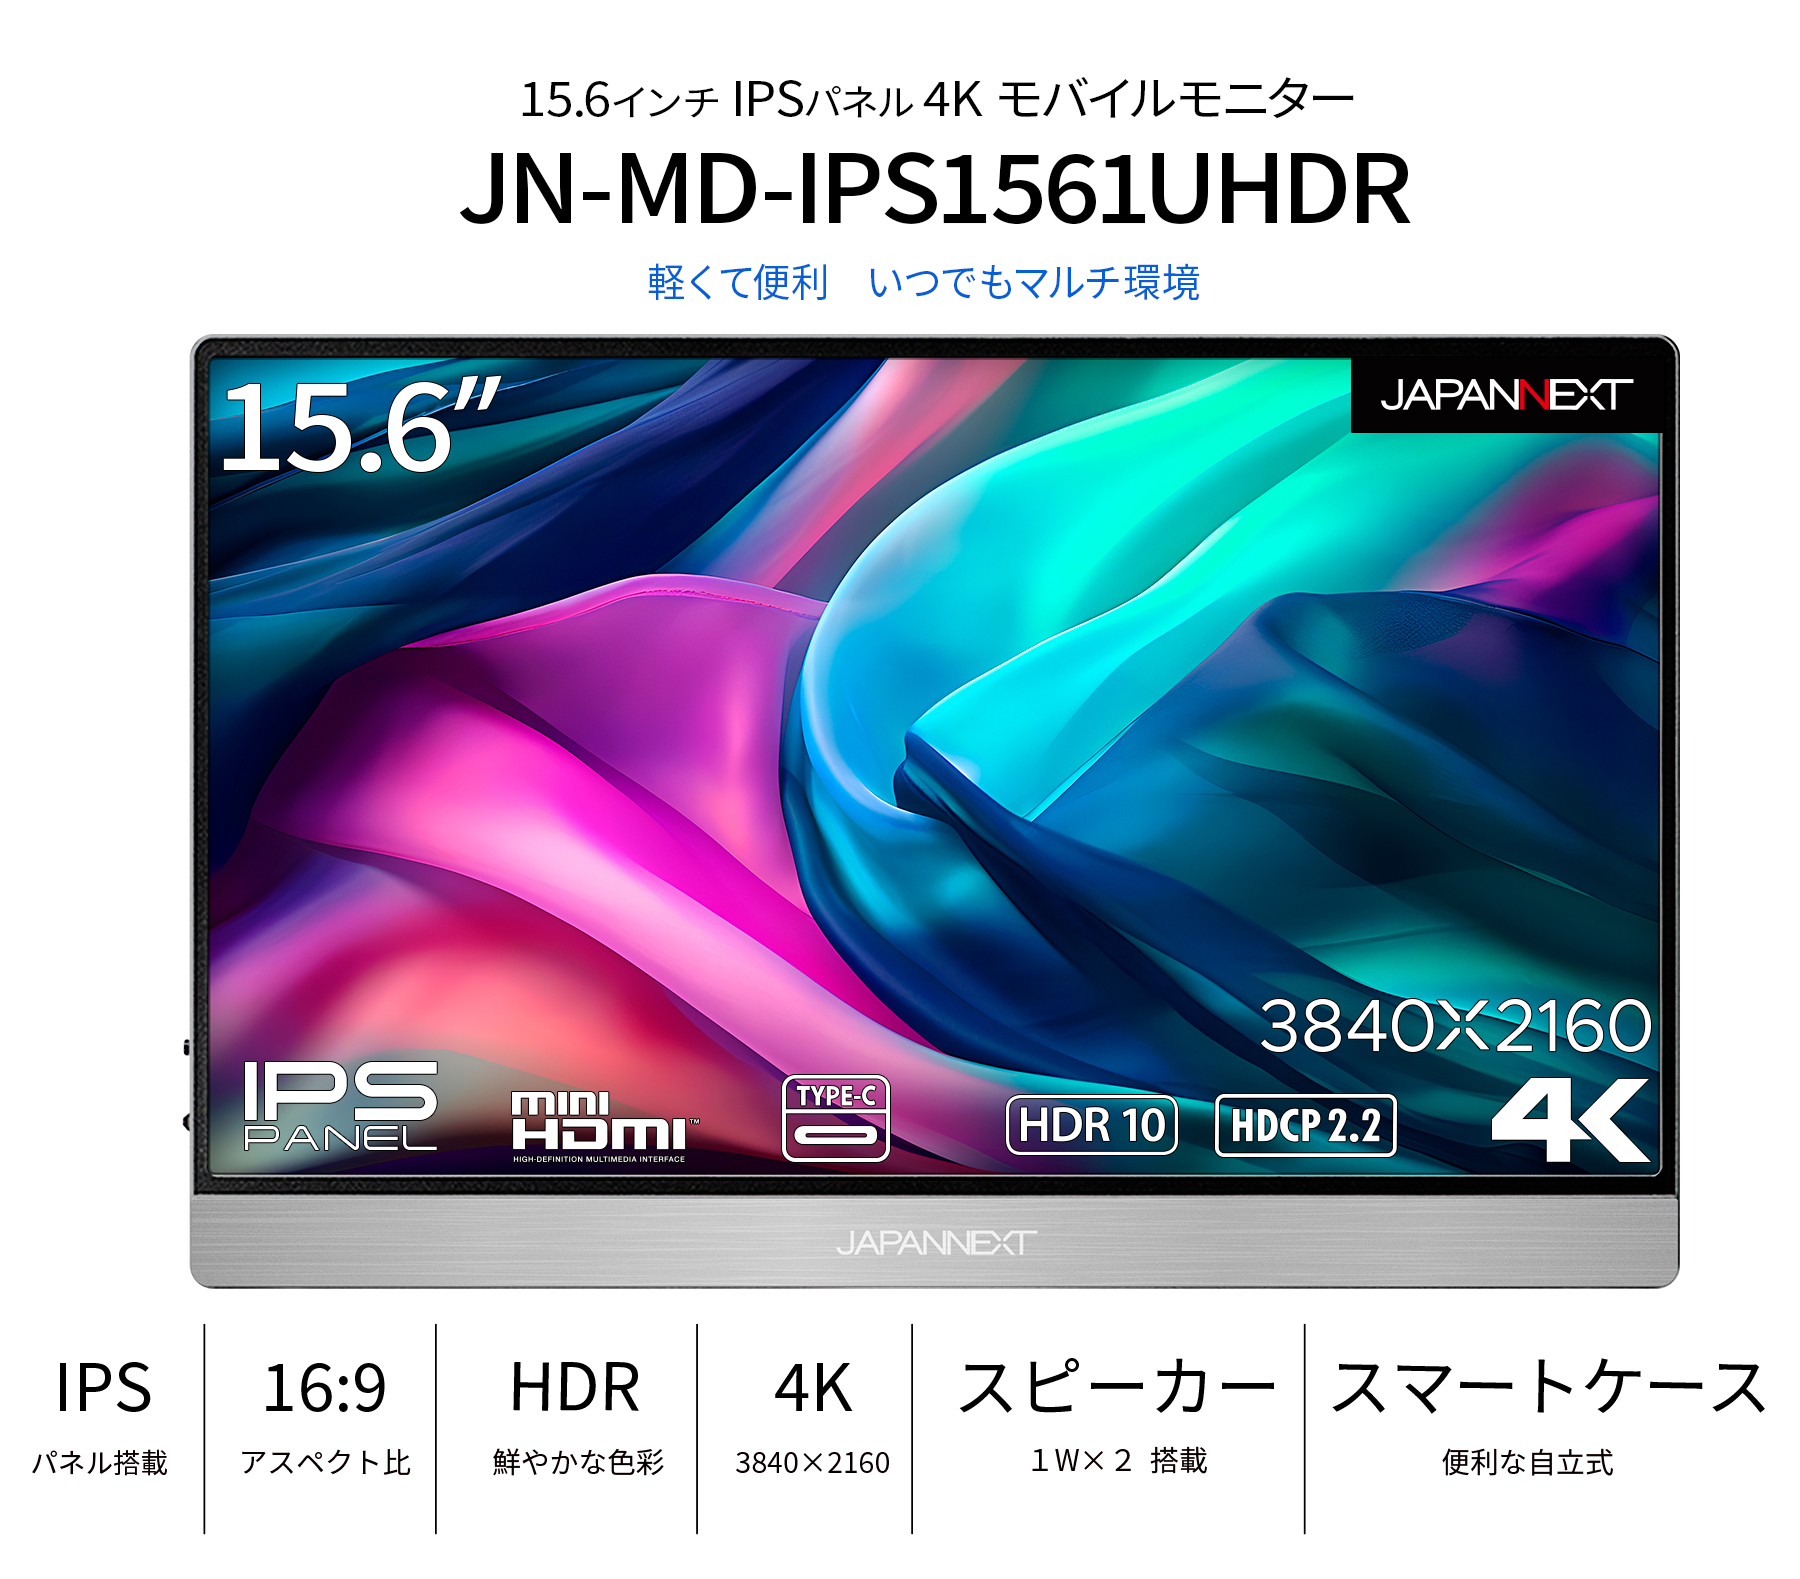 JAPANNEXT 15.6インチIPSパネル 4K(3840x2160)解像度 モバイルモニター 